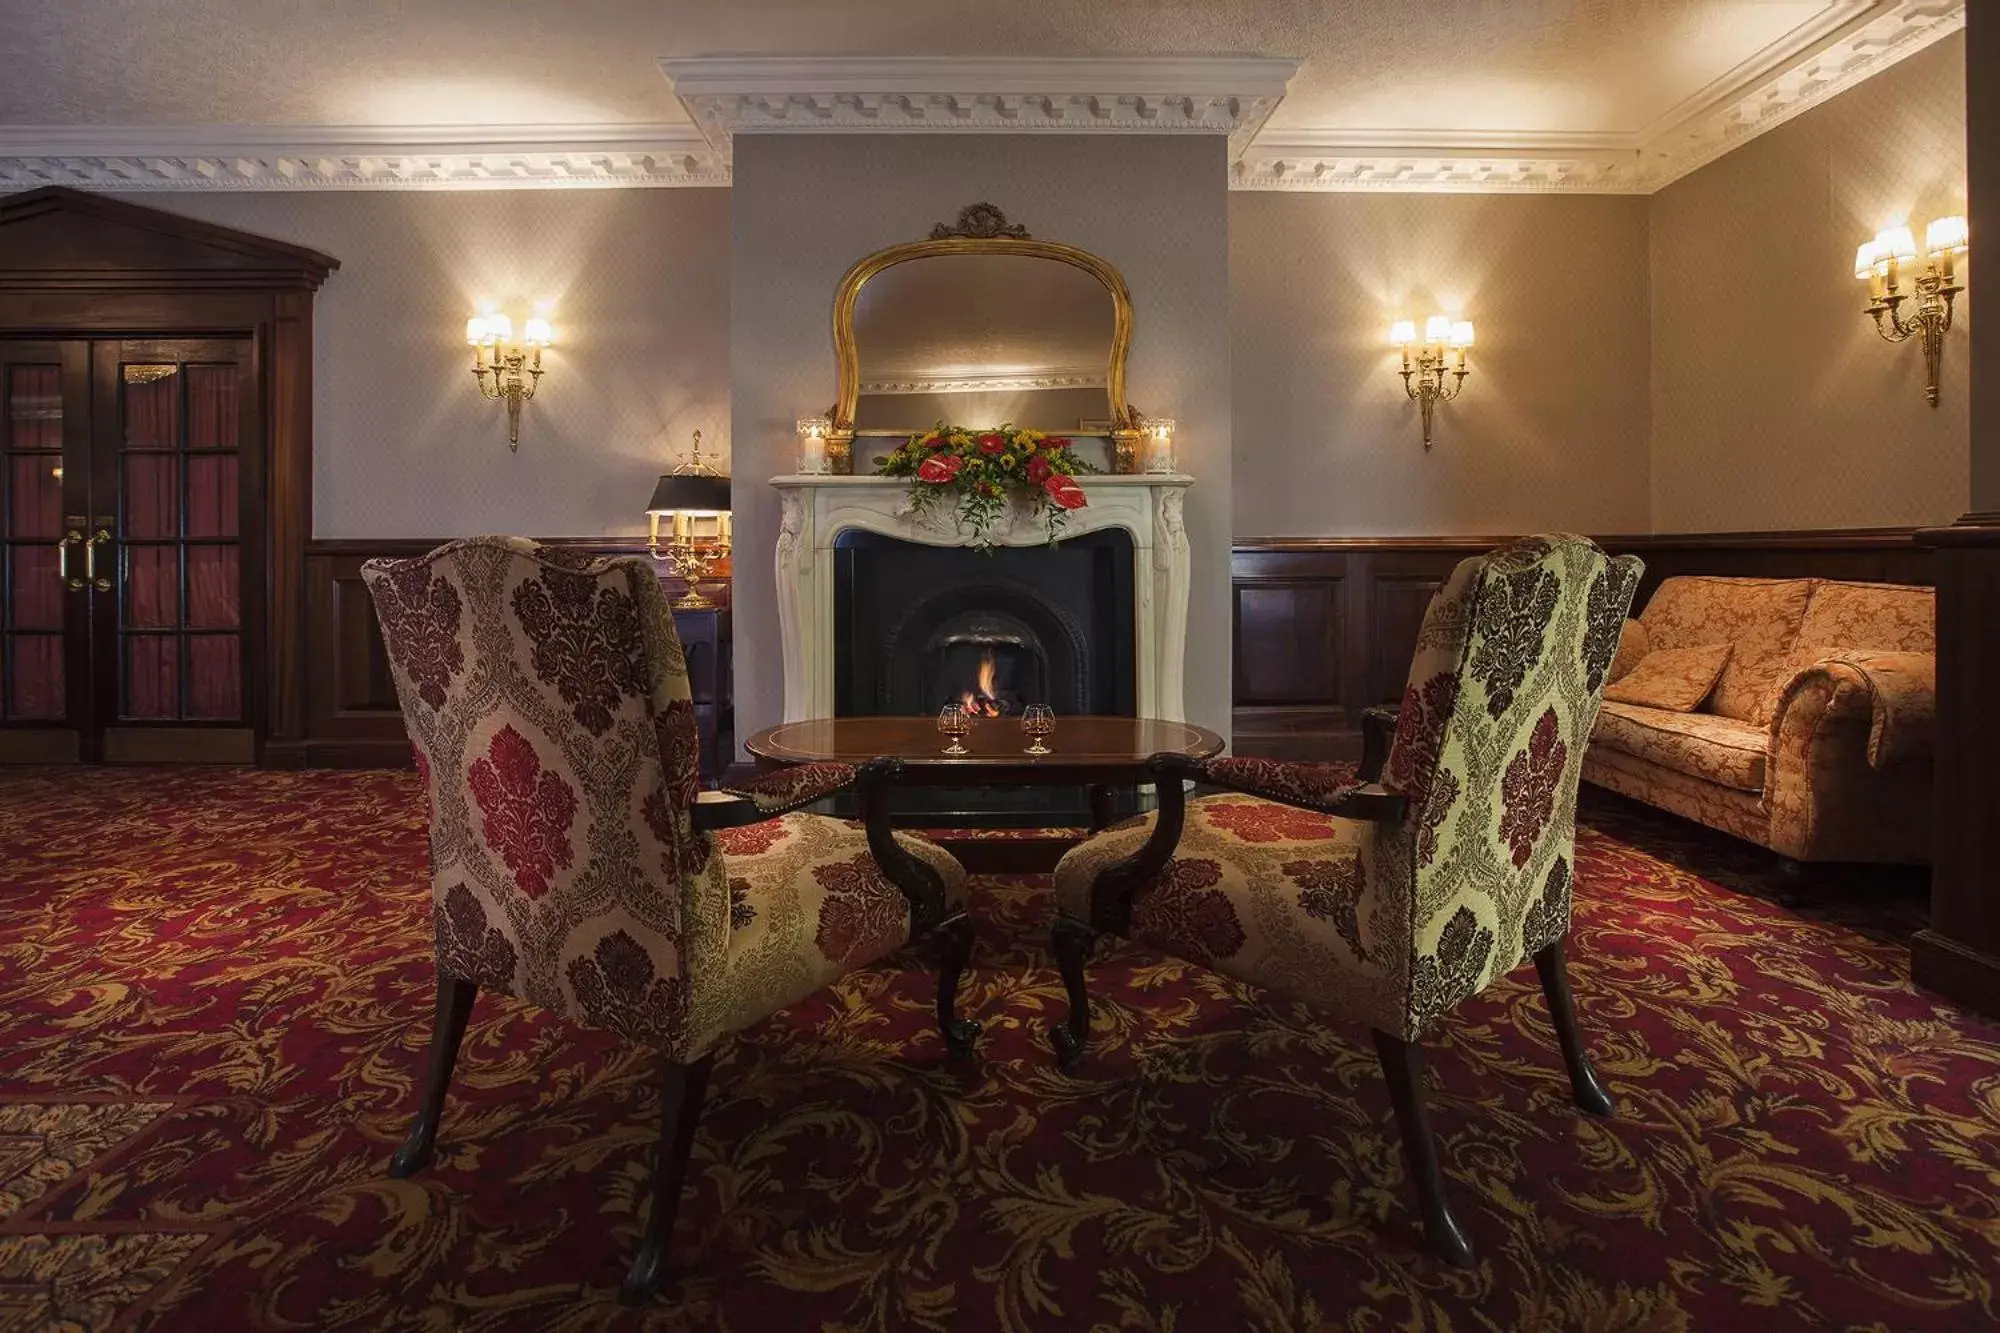 Lobby or reception in Seven Oaks Hotel